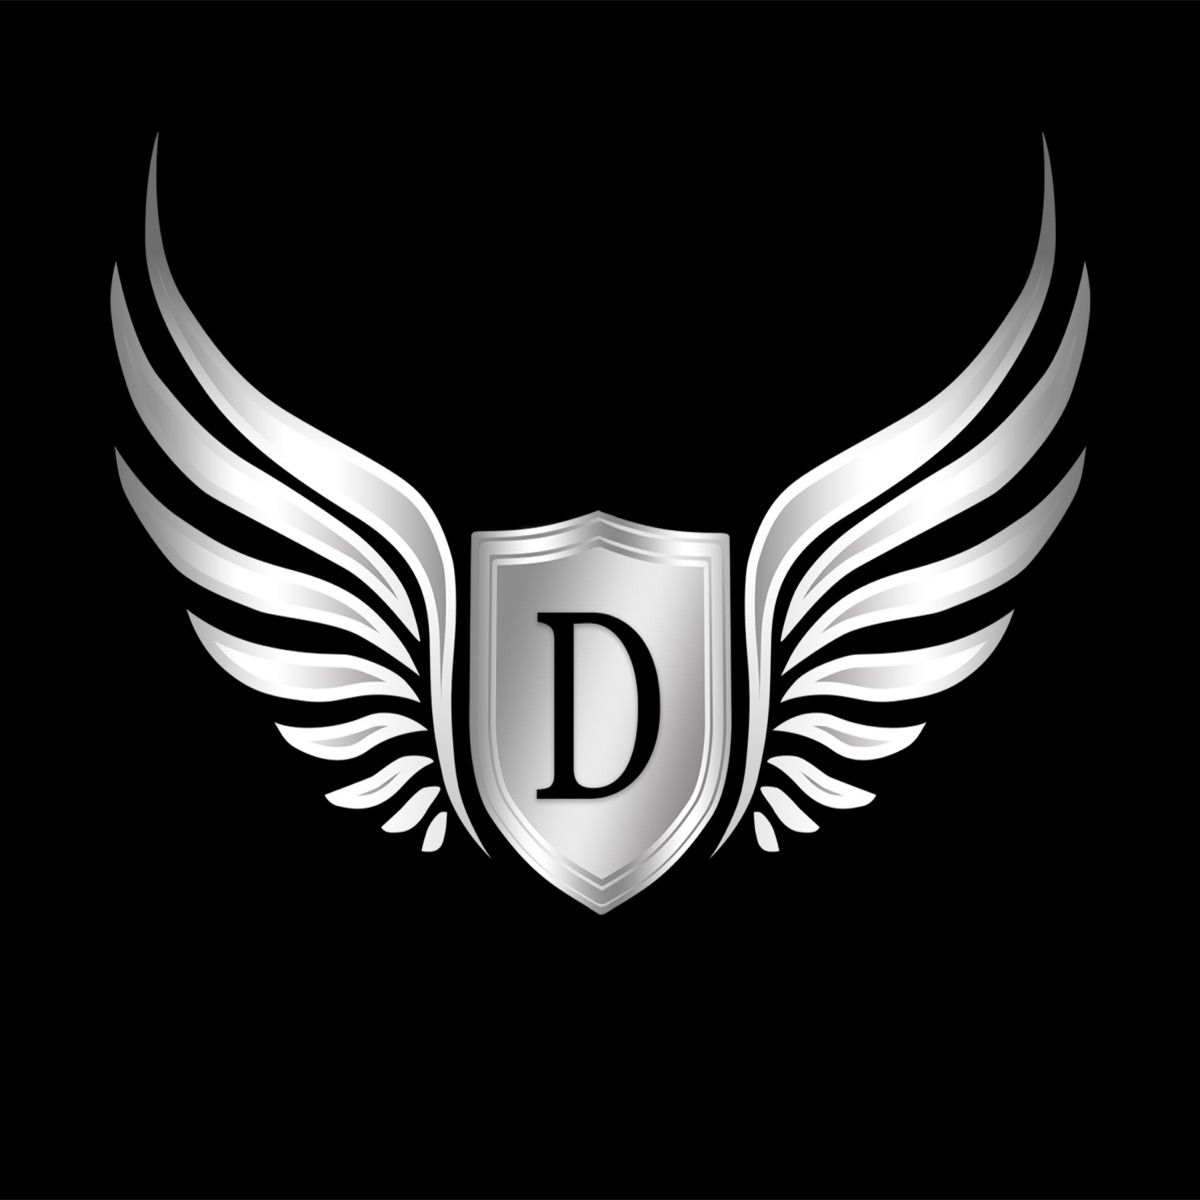 Sinister Rap Beats & Deep Hip Hop Instrumentals by DidekBeats on Apple Music